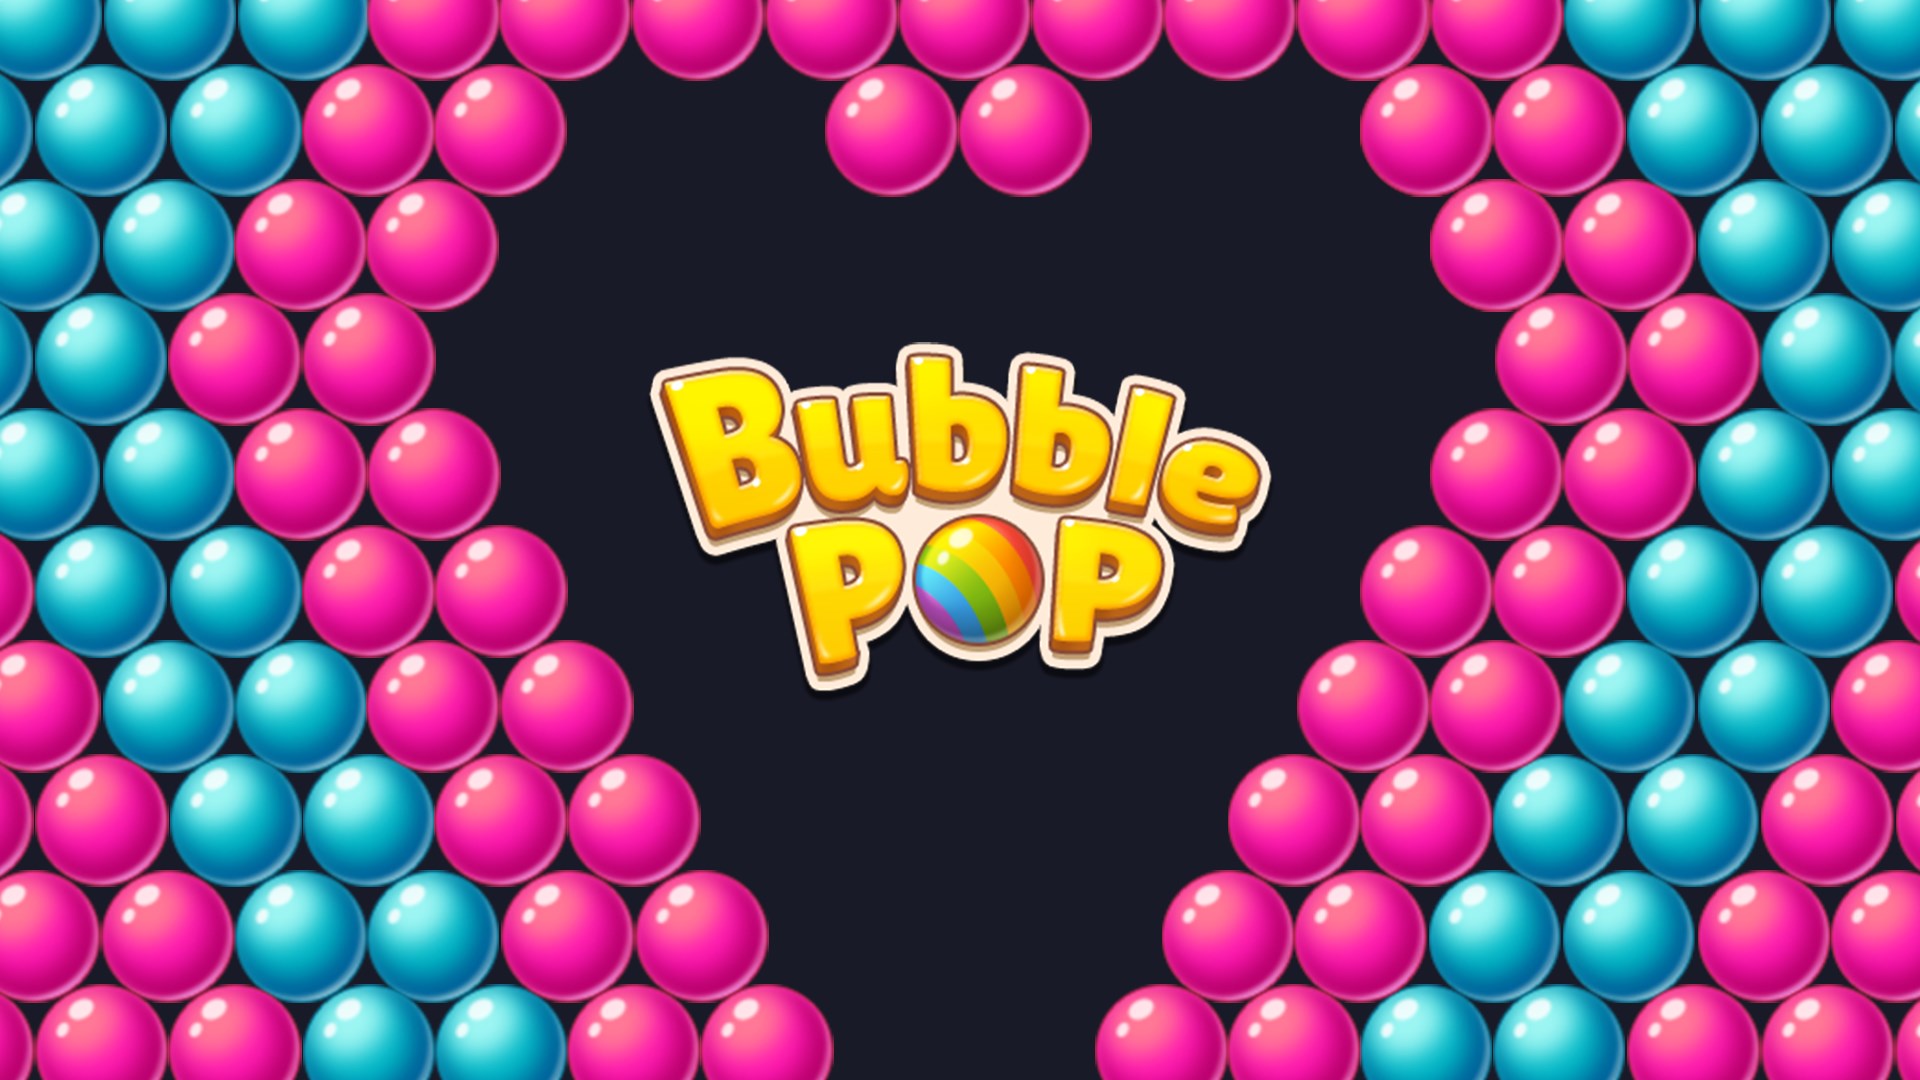 Get Bubble Pop! Puzzle Game Legend - Microsoft Store en-NA